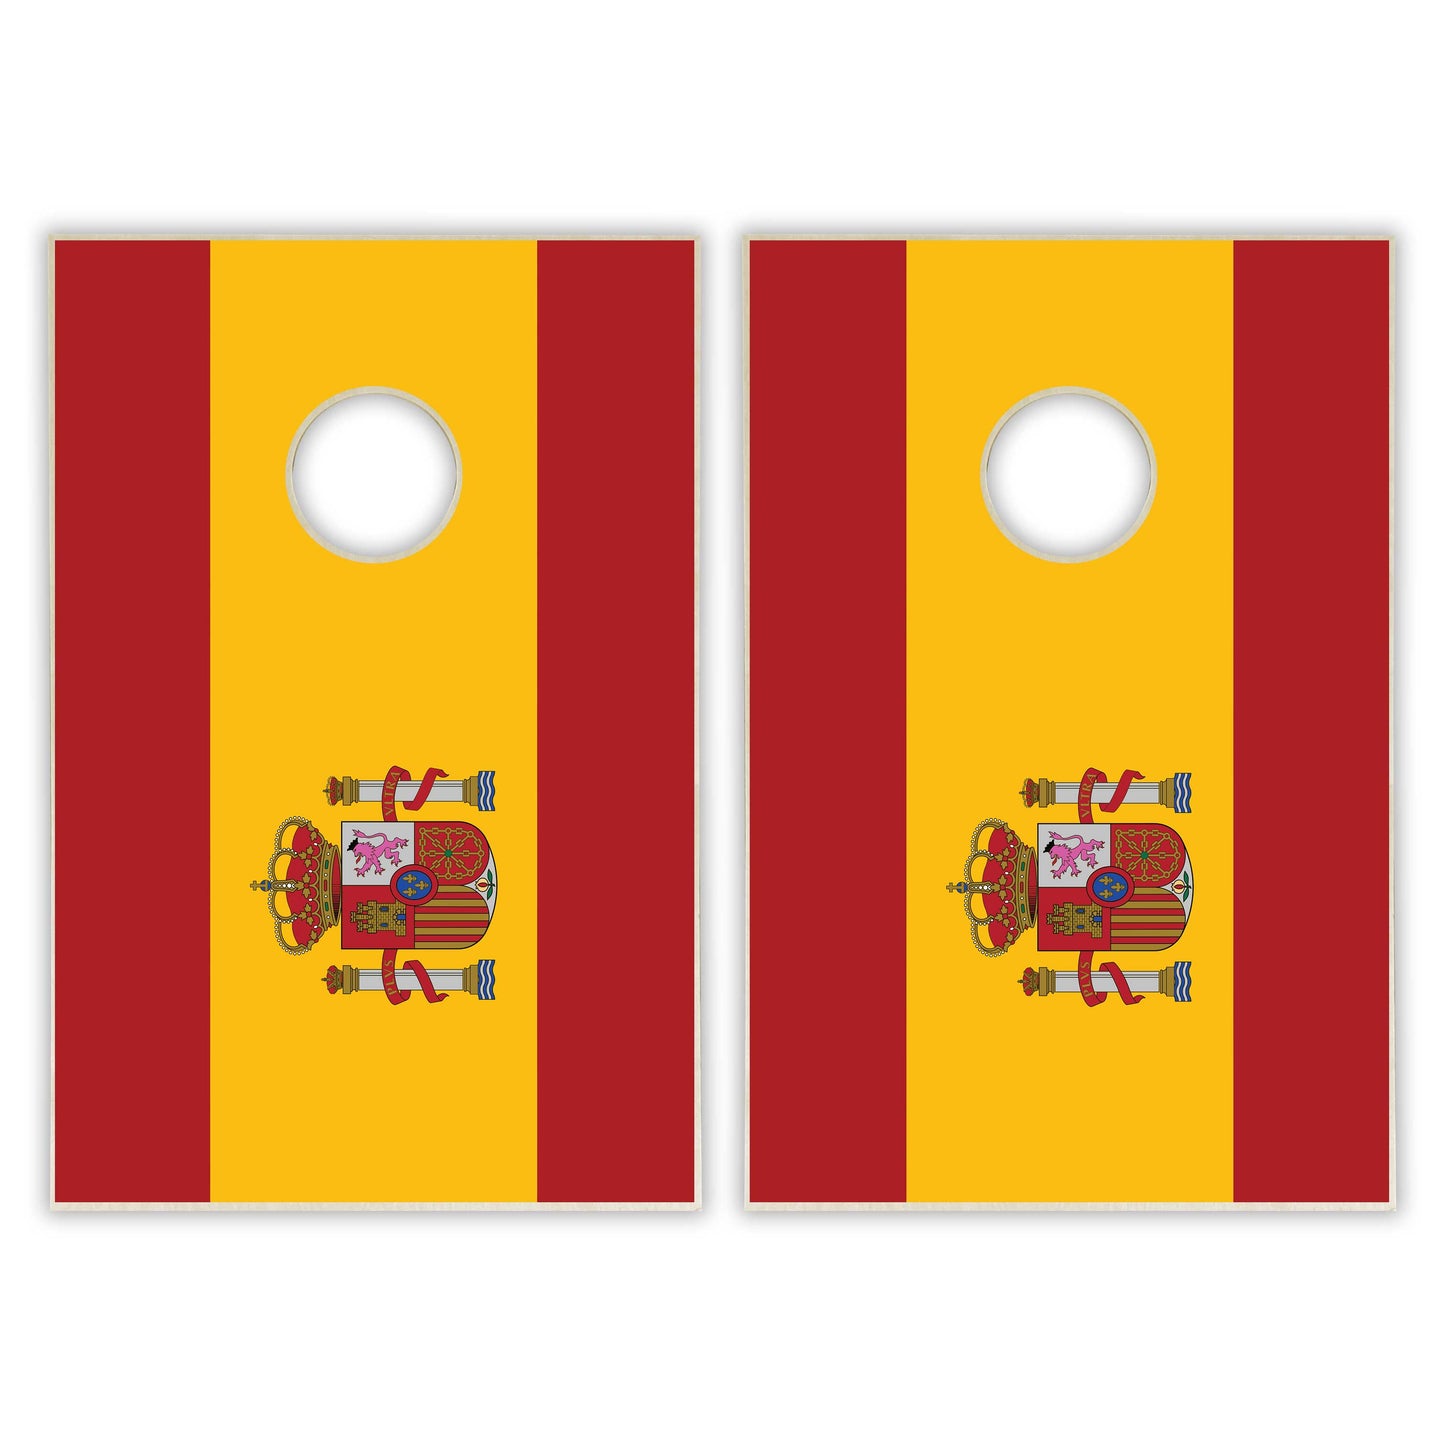 Spain Flag Tailgate Cornhole Set - Distressed Wood